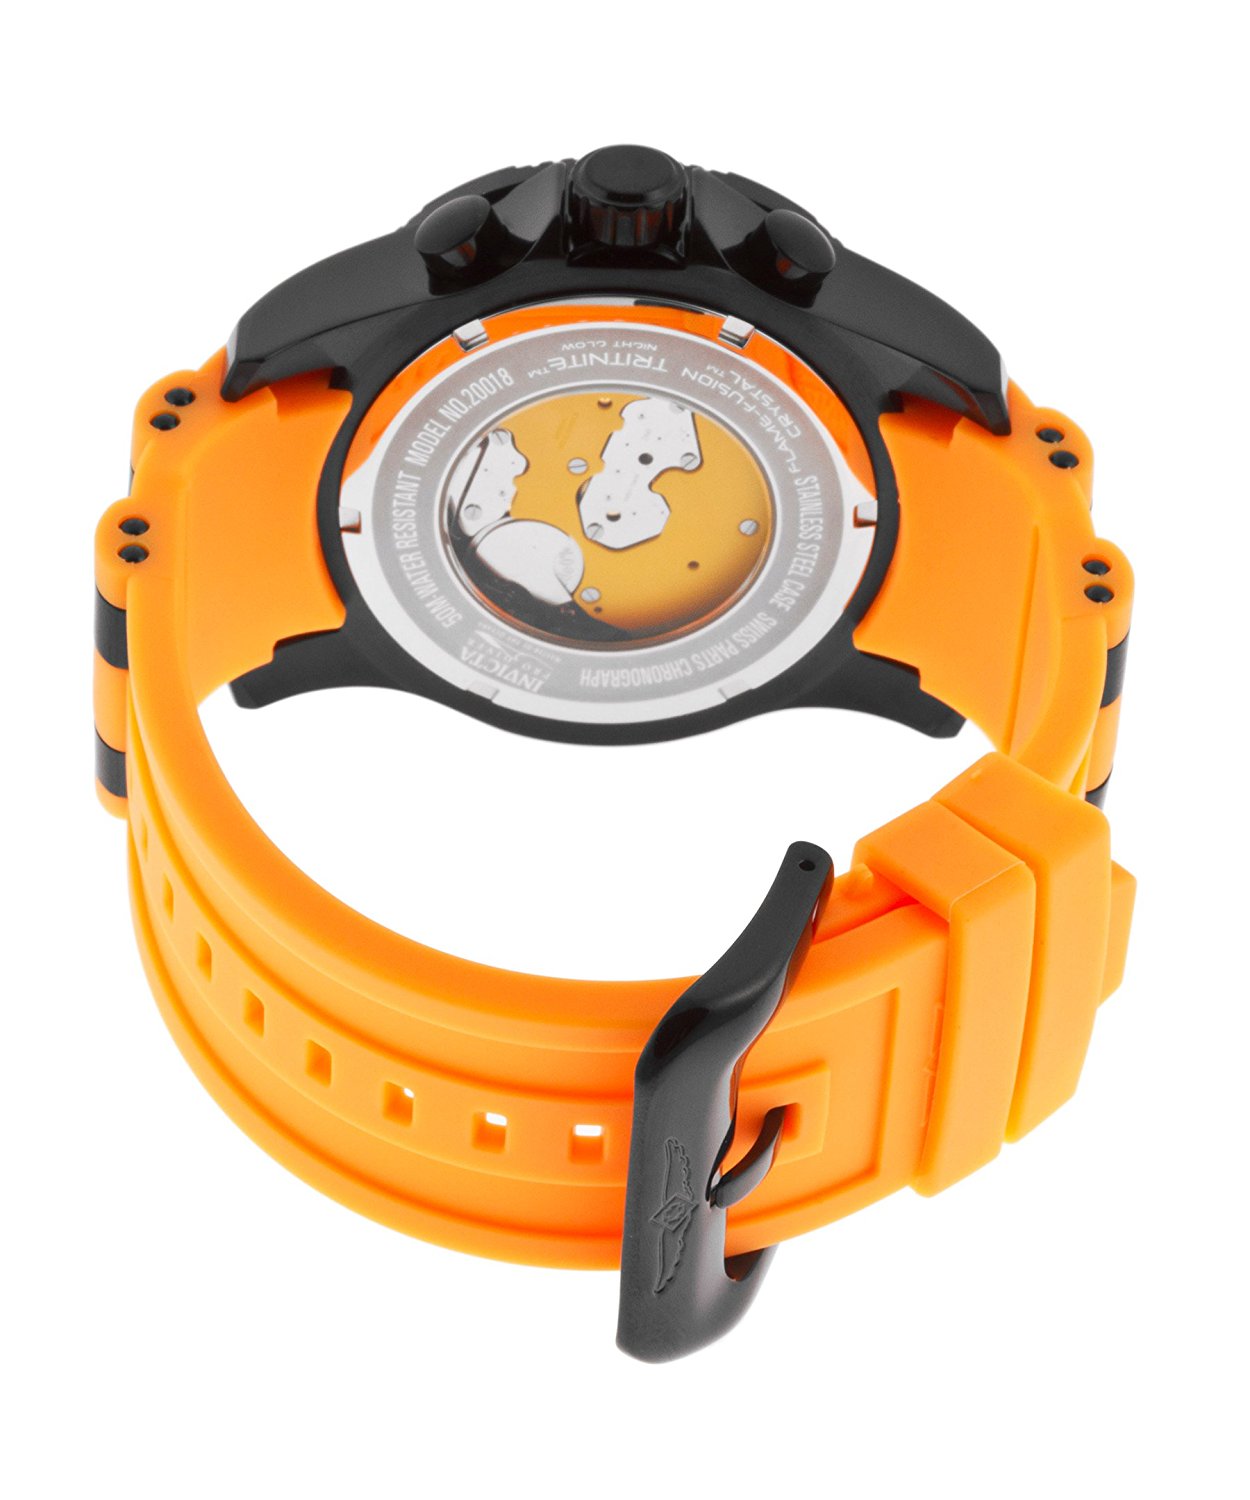 Invicta Pro Diver Quartz Chronograph Day Date Orange Polyurethane Watch # 20018 (Men Watch)